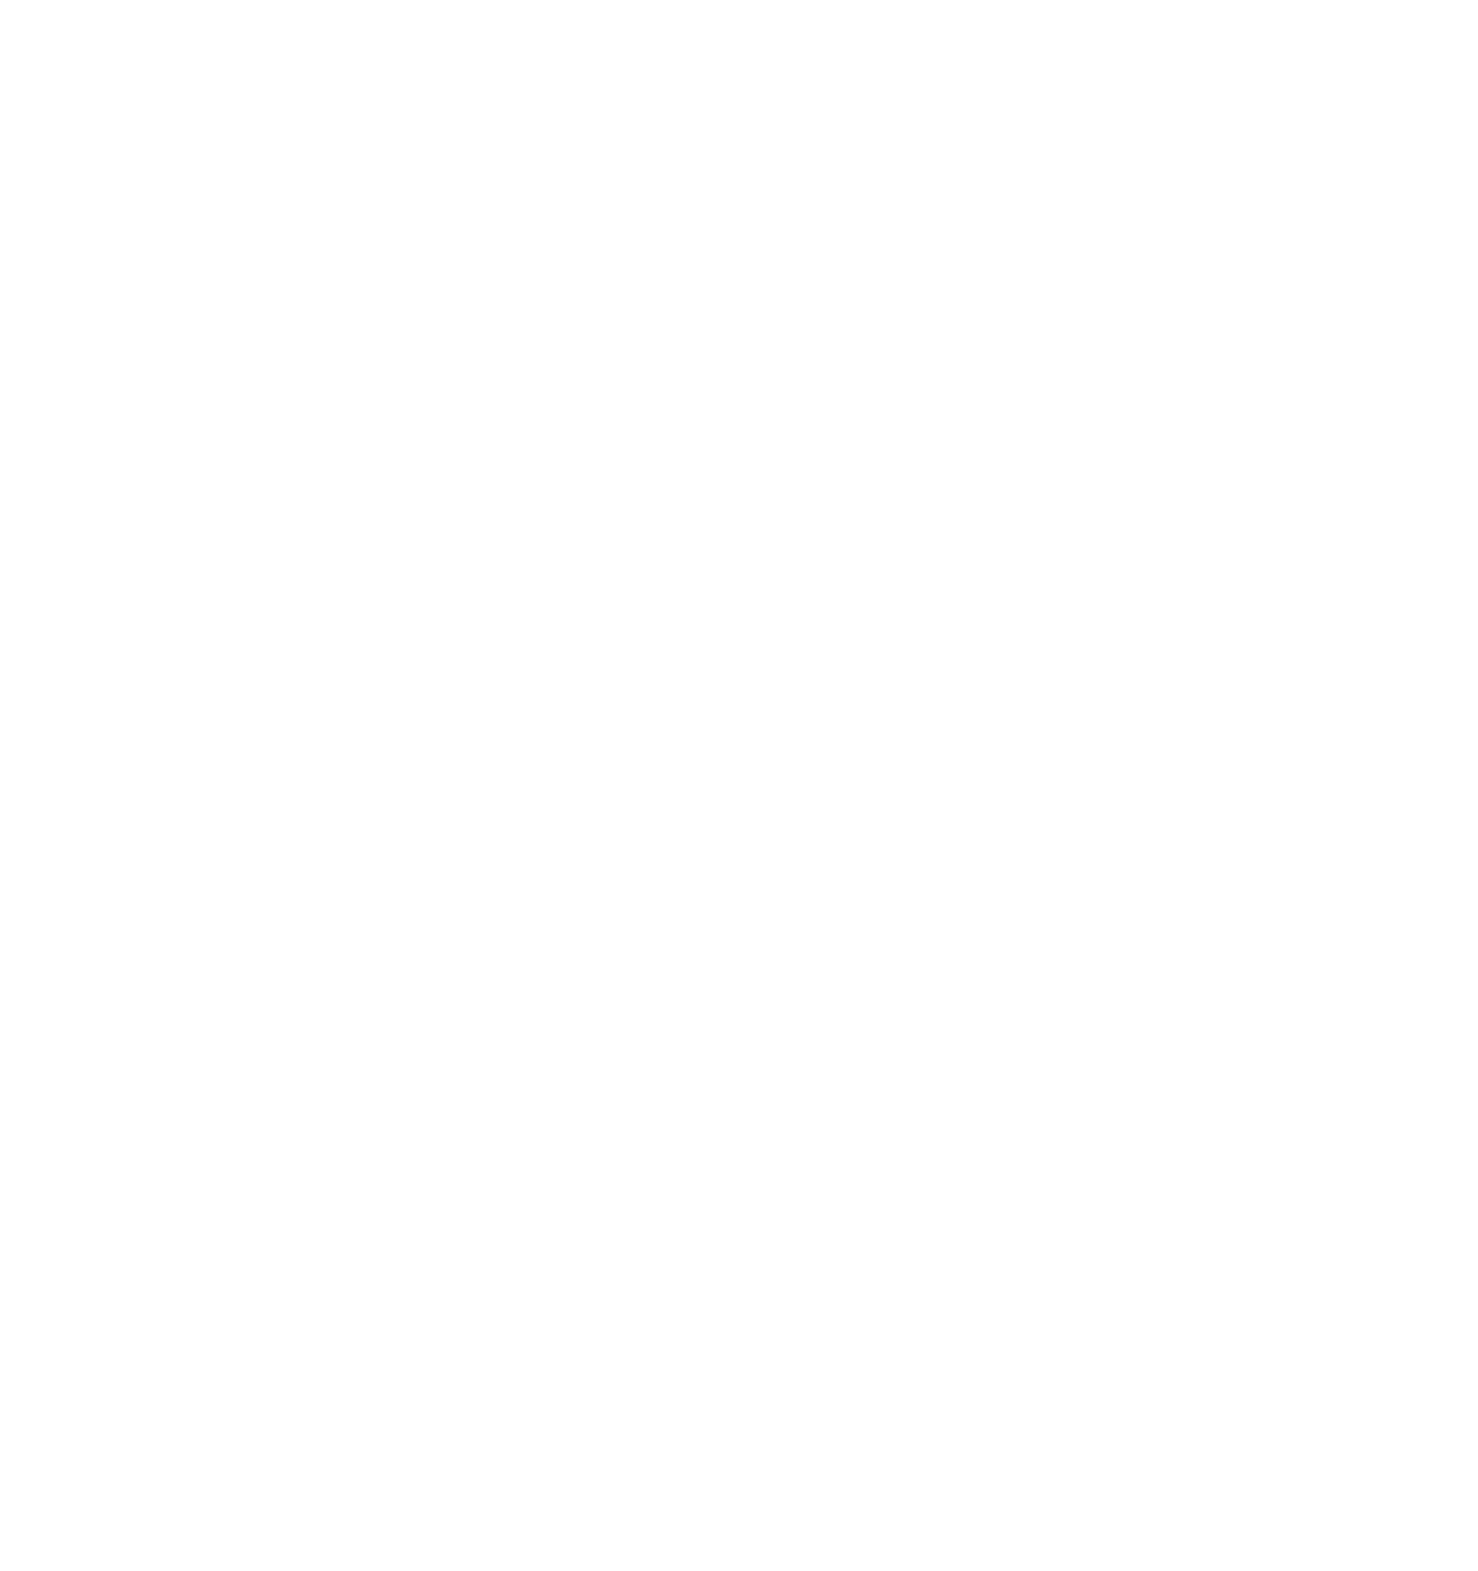 Marten Transport logo for dark backgrounds (transparent PNG)